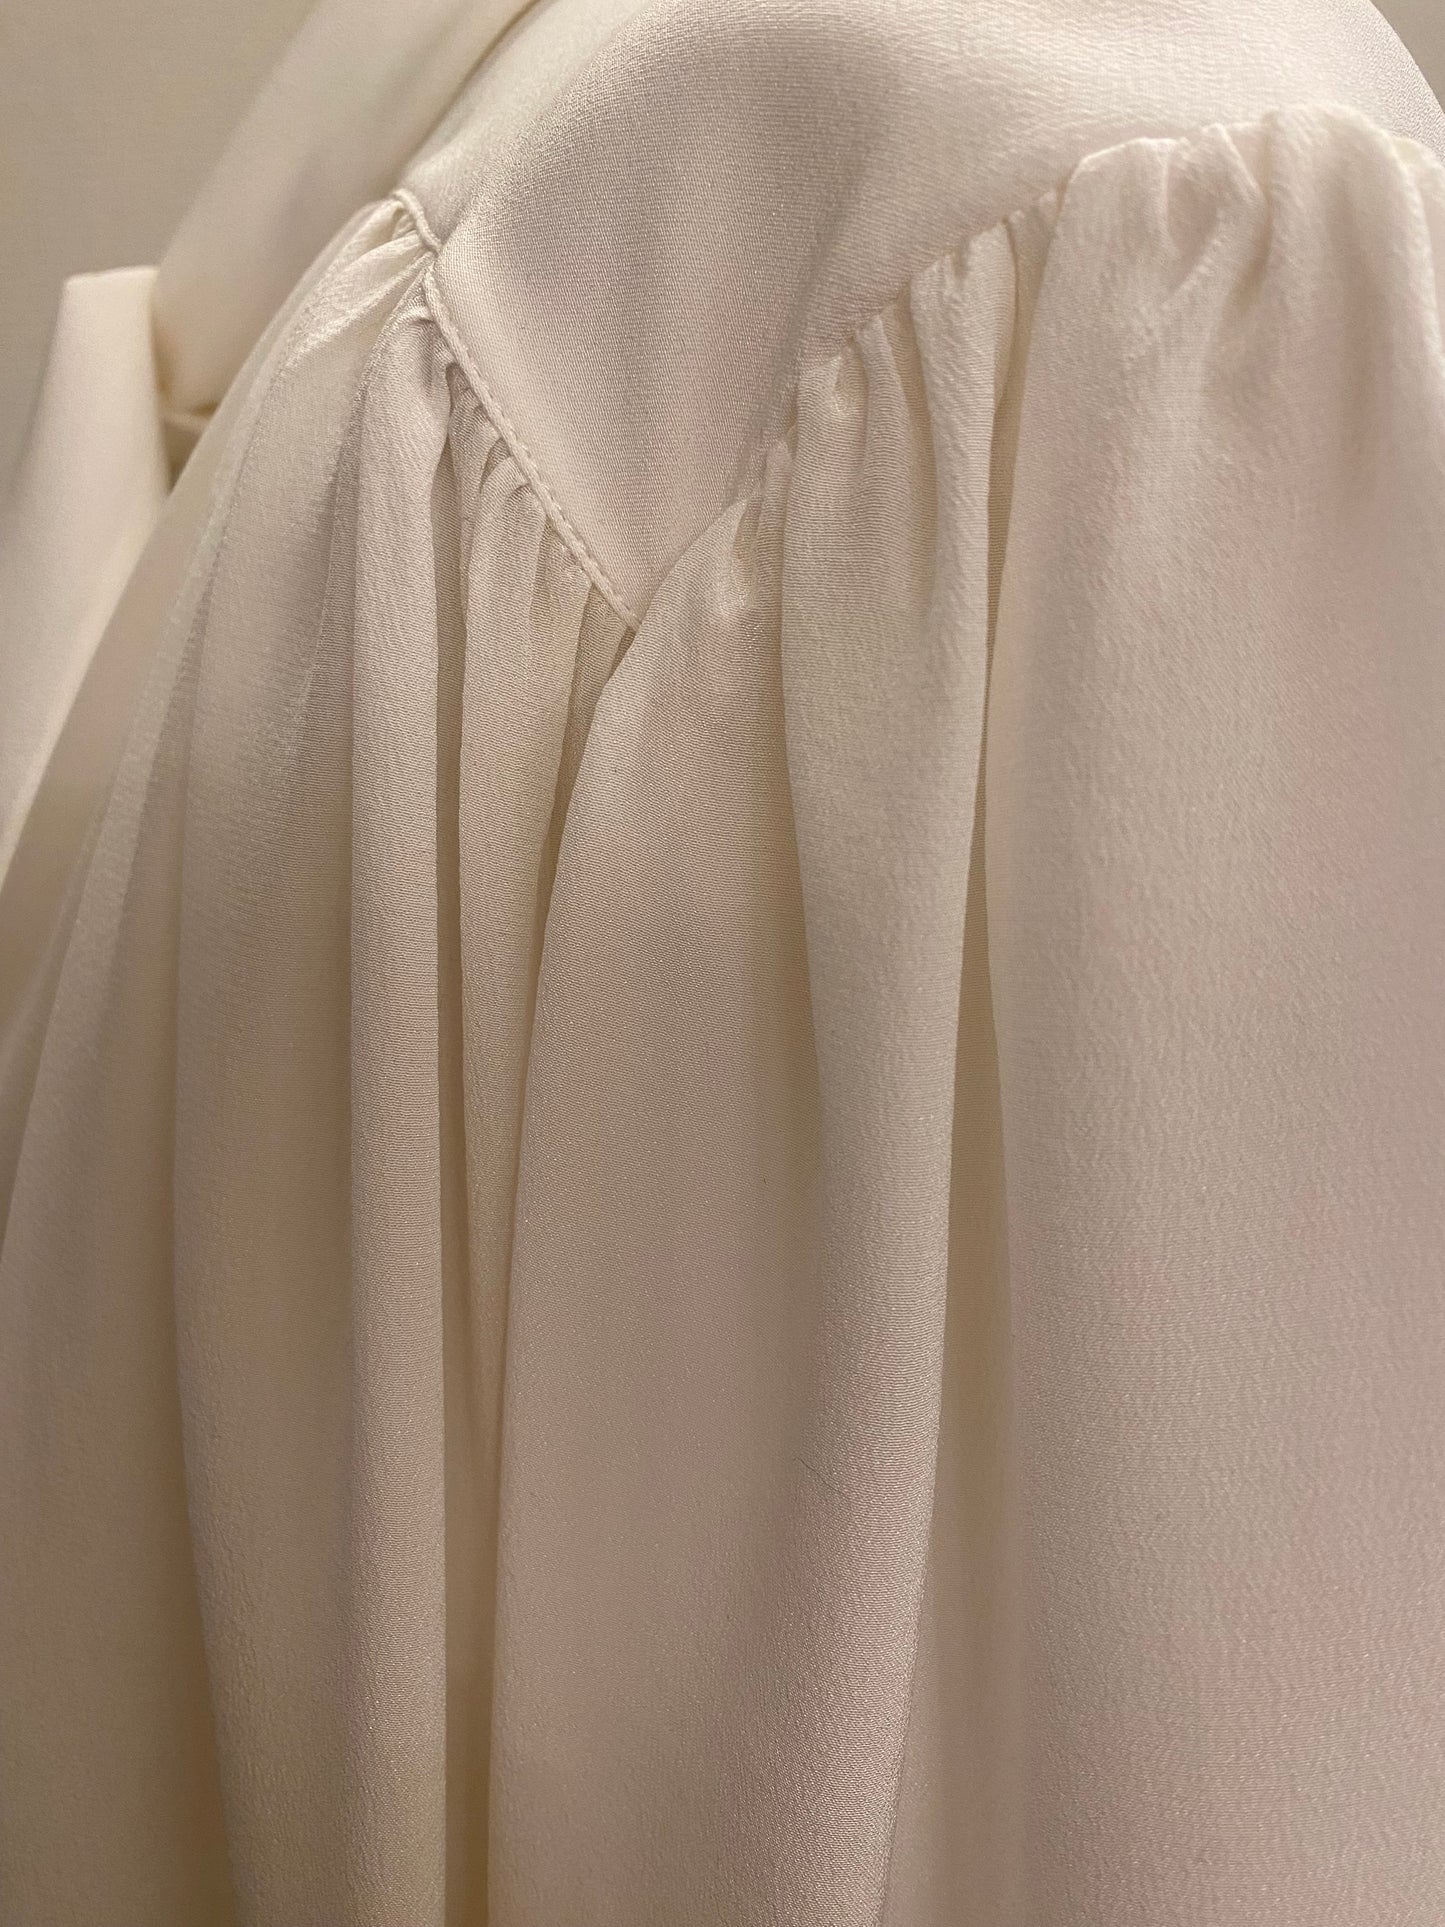 BALENCIAGA Tie-neck Silk Blouse Size 38